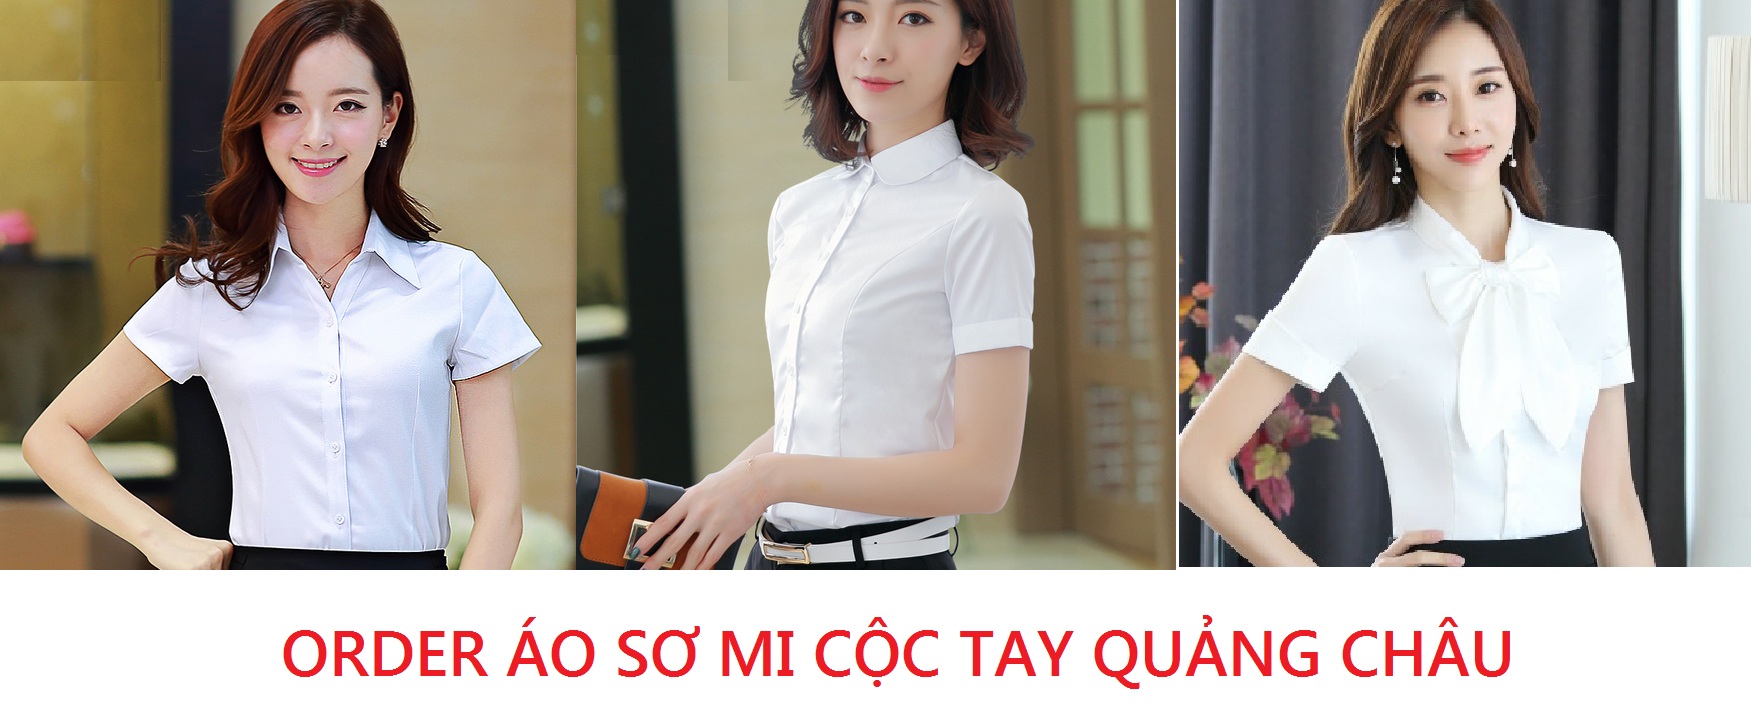 Order áo sơ mi cộc tay Quảng Châu mẫu mã đẹp trên Taobao